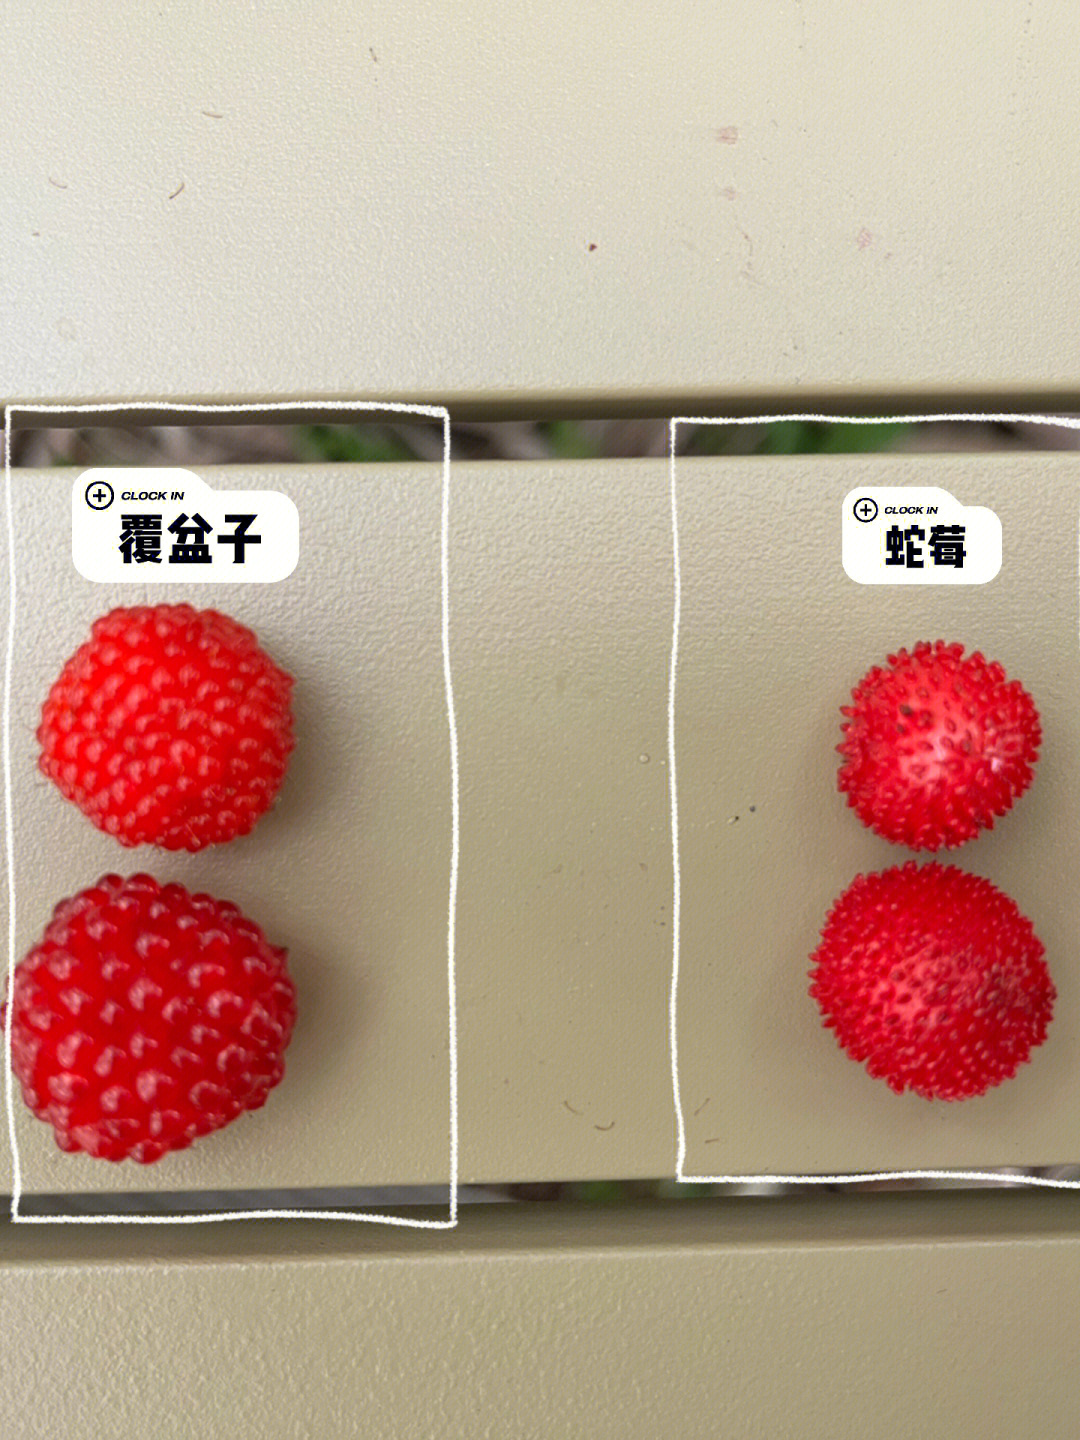 蛇莓与野草莓咋区分图图片